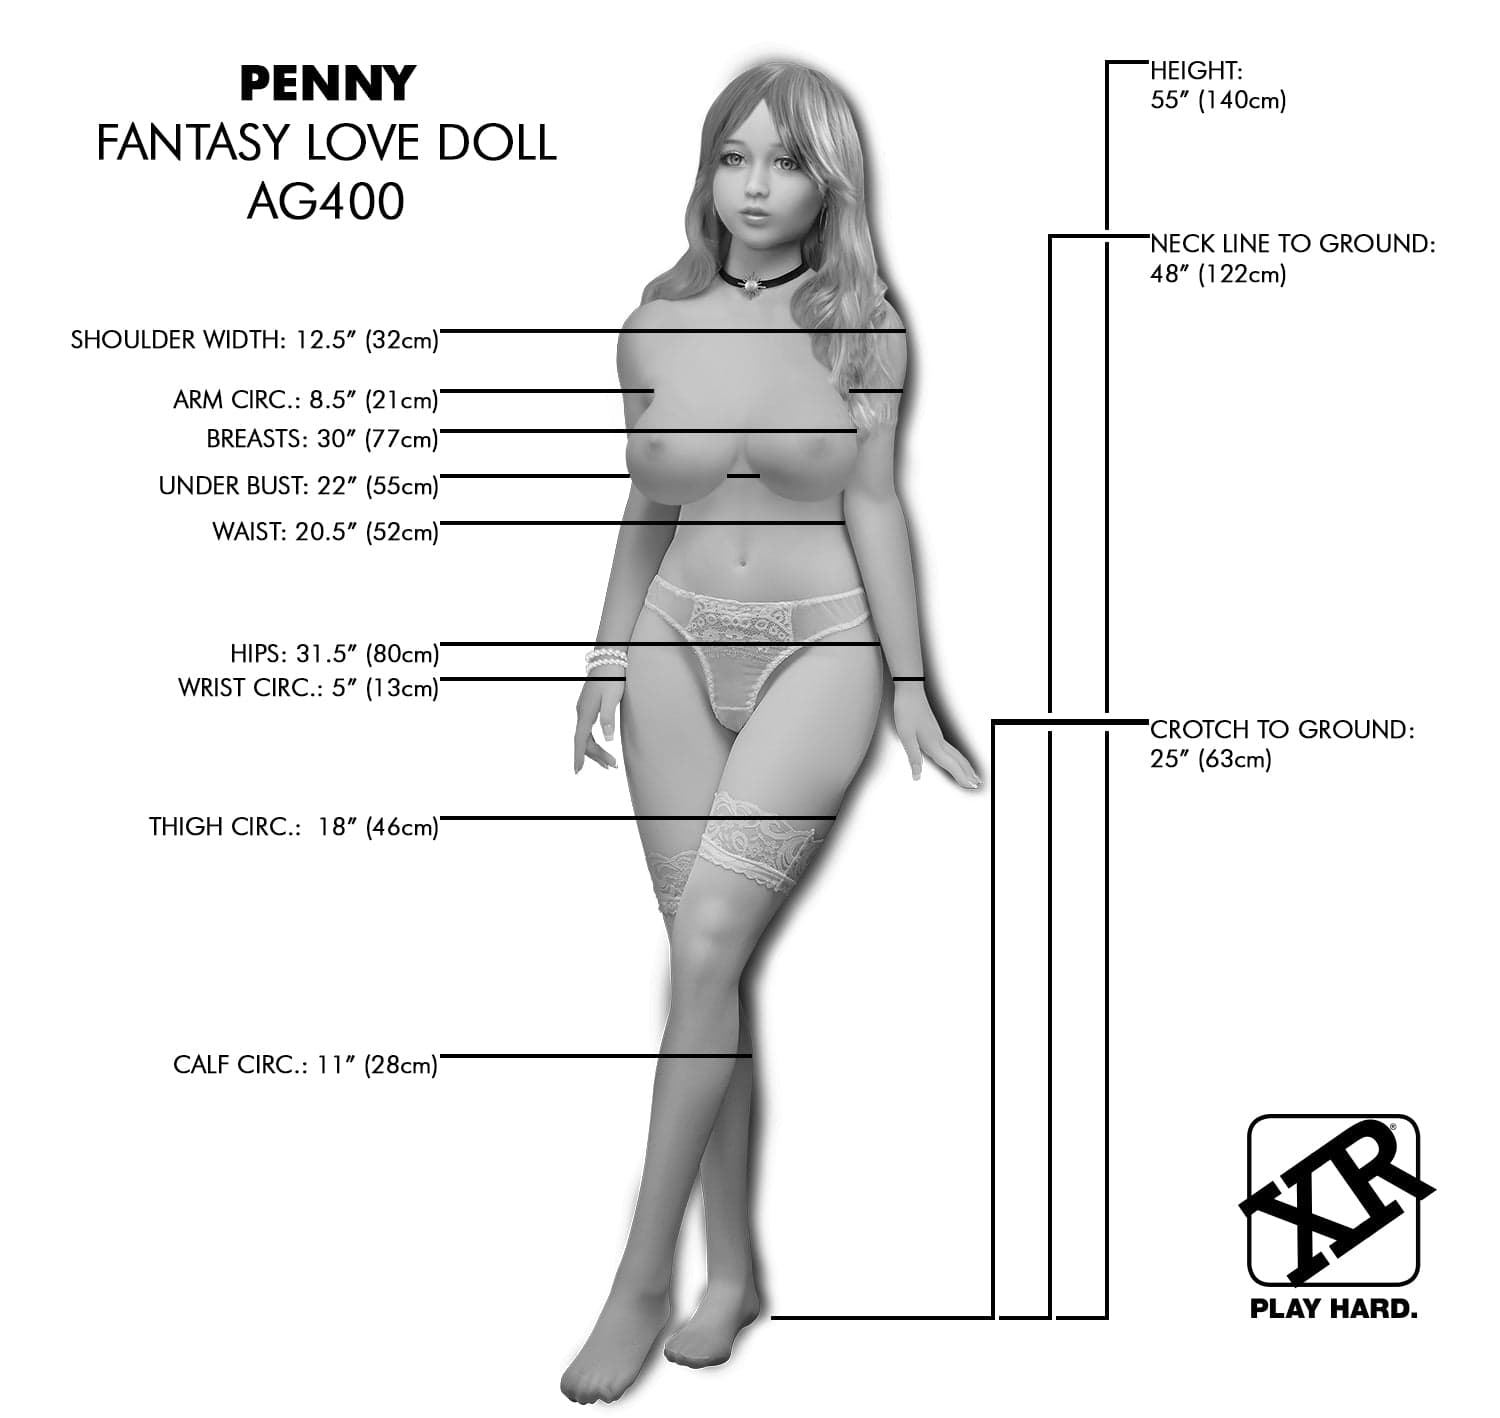 NextGen Dolls Full Body Doll Vanilla NextGen Dolls - Penny Fantasy Love Doll at the Haus of Shag